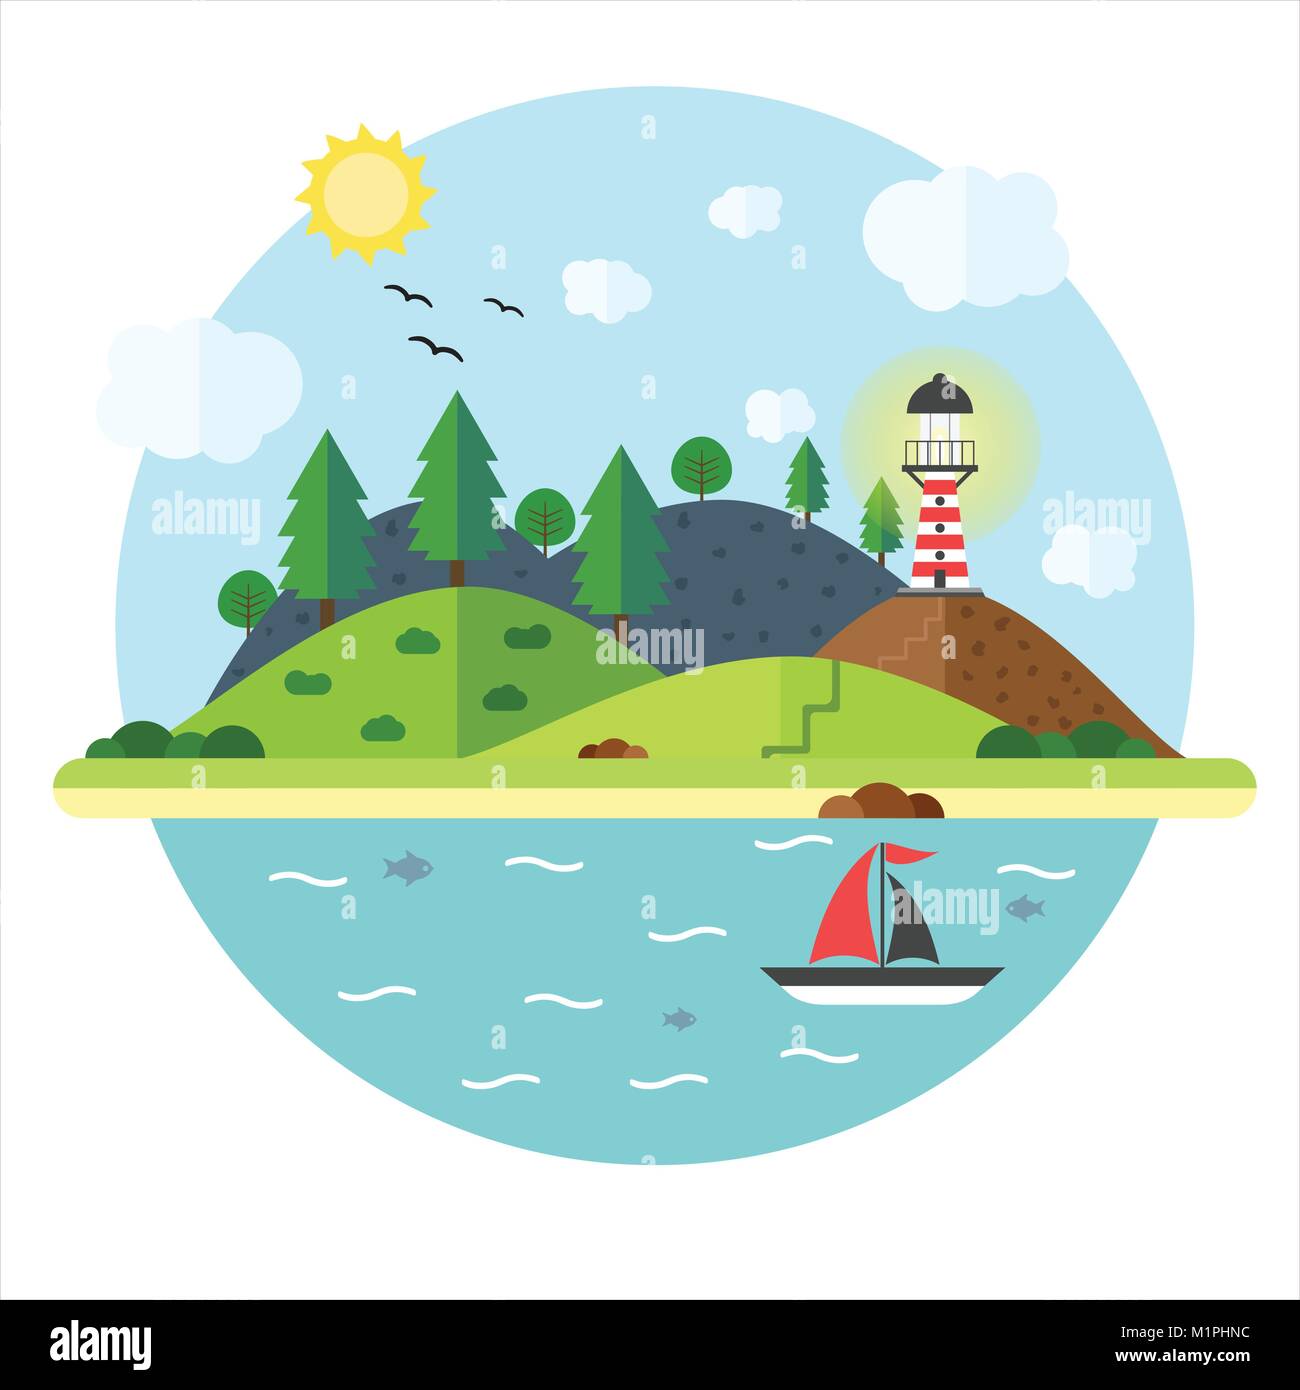 Ferienhäuser im Meer mit Leuchtturm, Berg, Baum, Berg, Fisch und Segelschiff. Sommer Urlaub Reise Konzept. Abbildung: im flachen Stil. Trav Stock Vektor